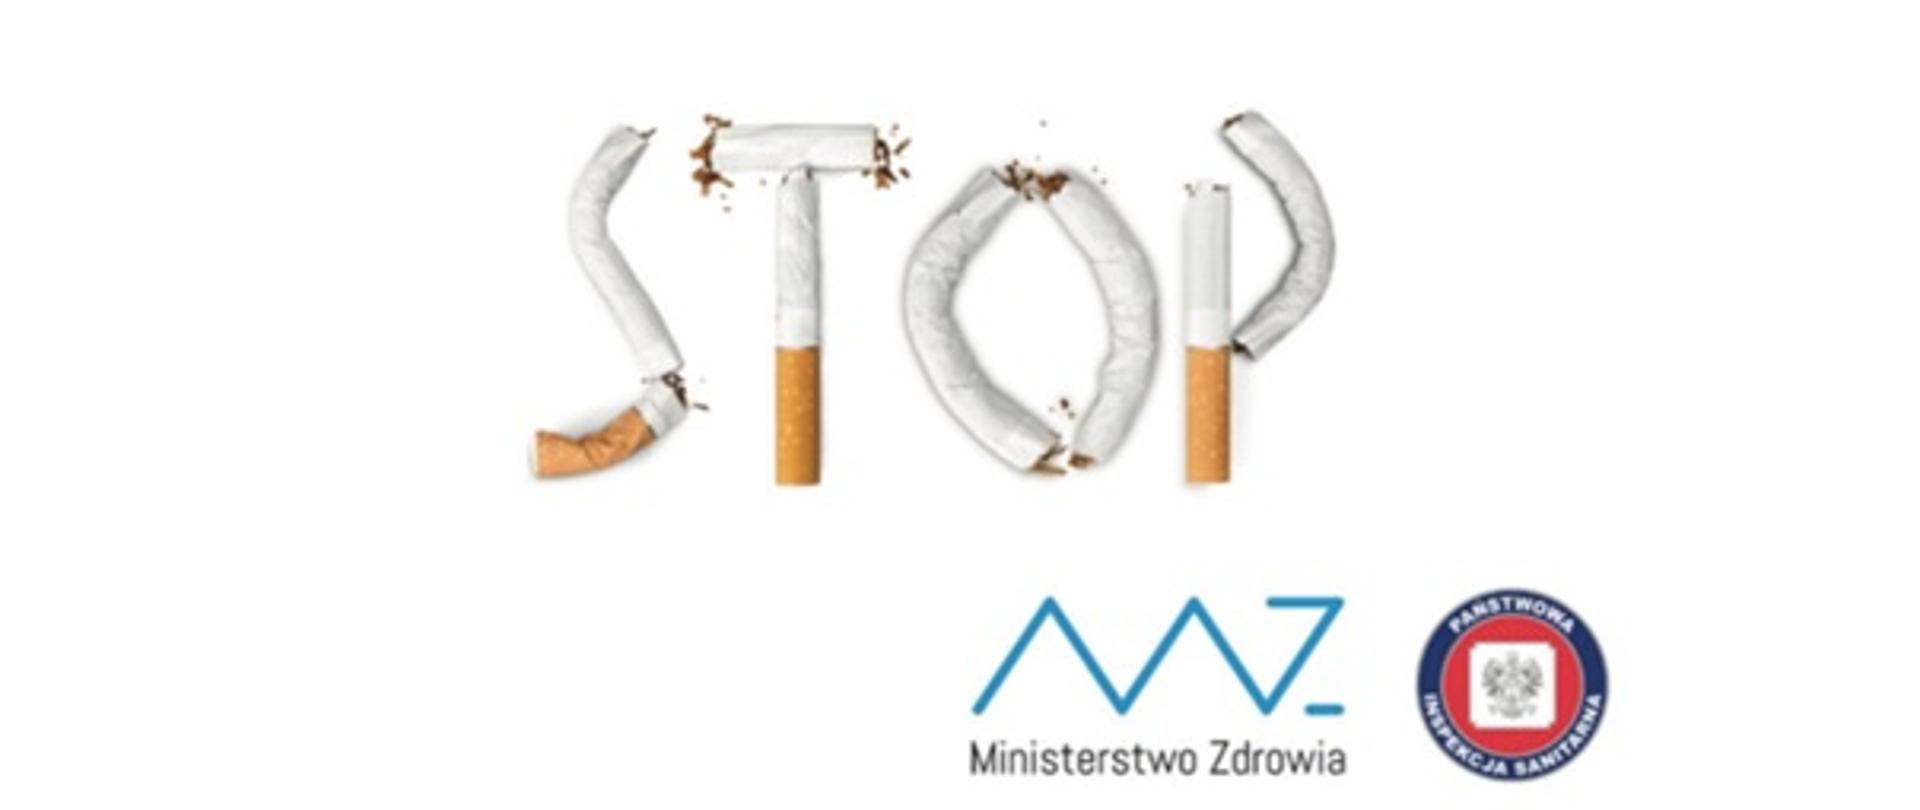 napis STOP ułożony z papierosów, pod spodem logotypy Ministerstwa Zdrowia i Państwowej Inspekcji Sanitarnej